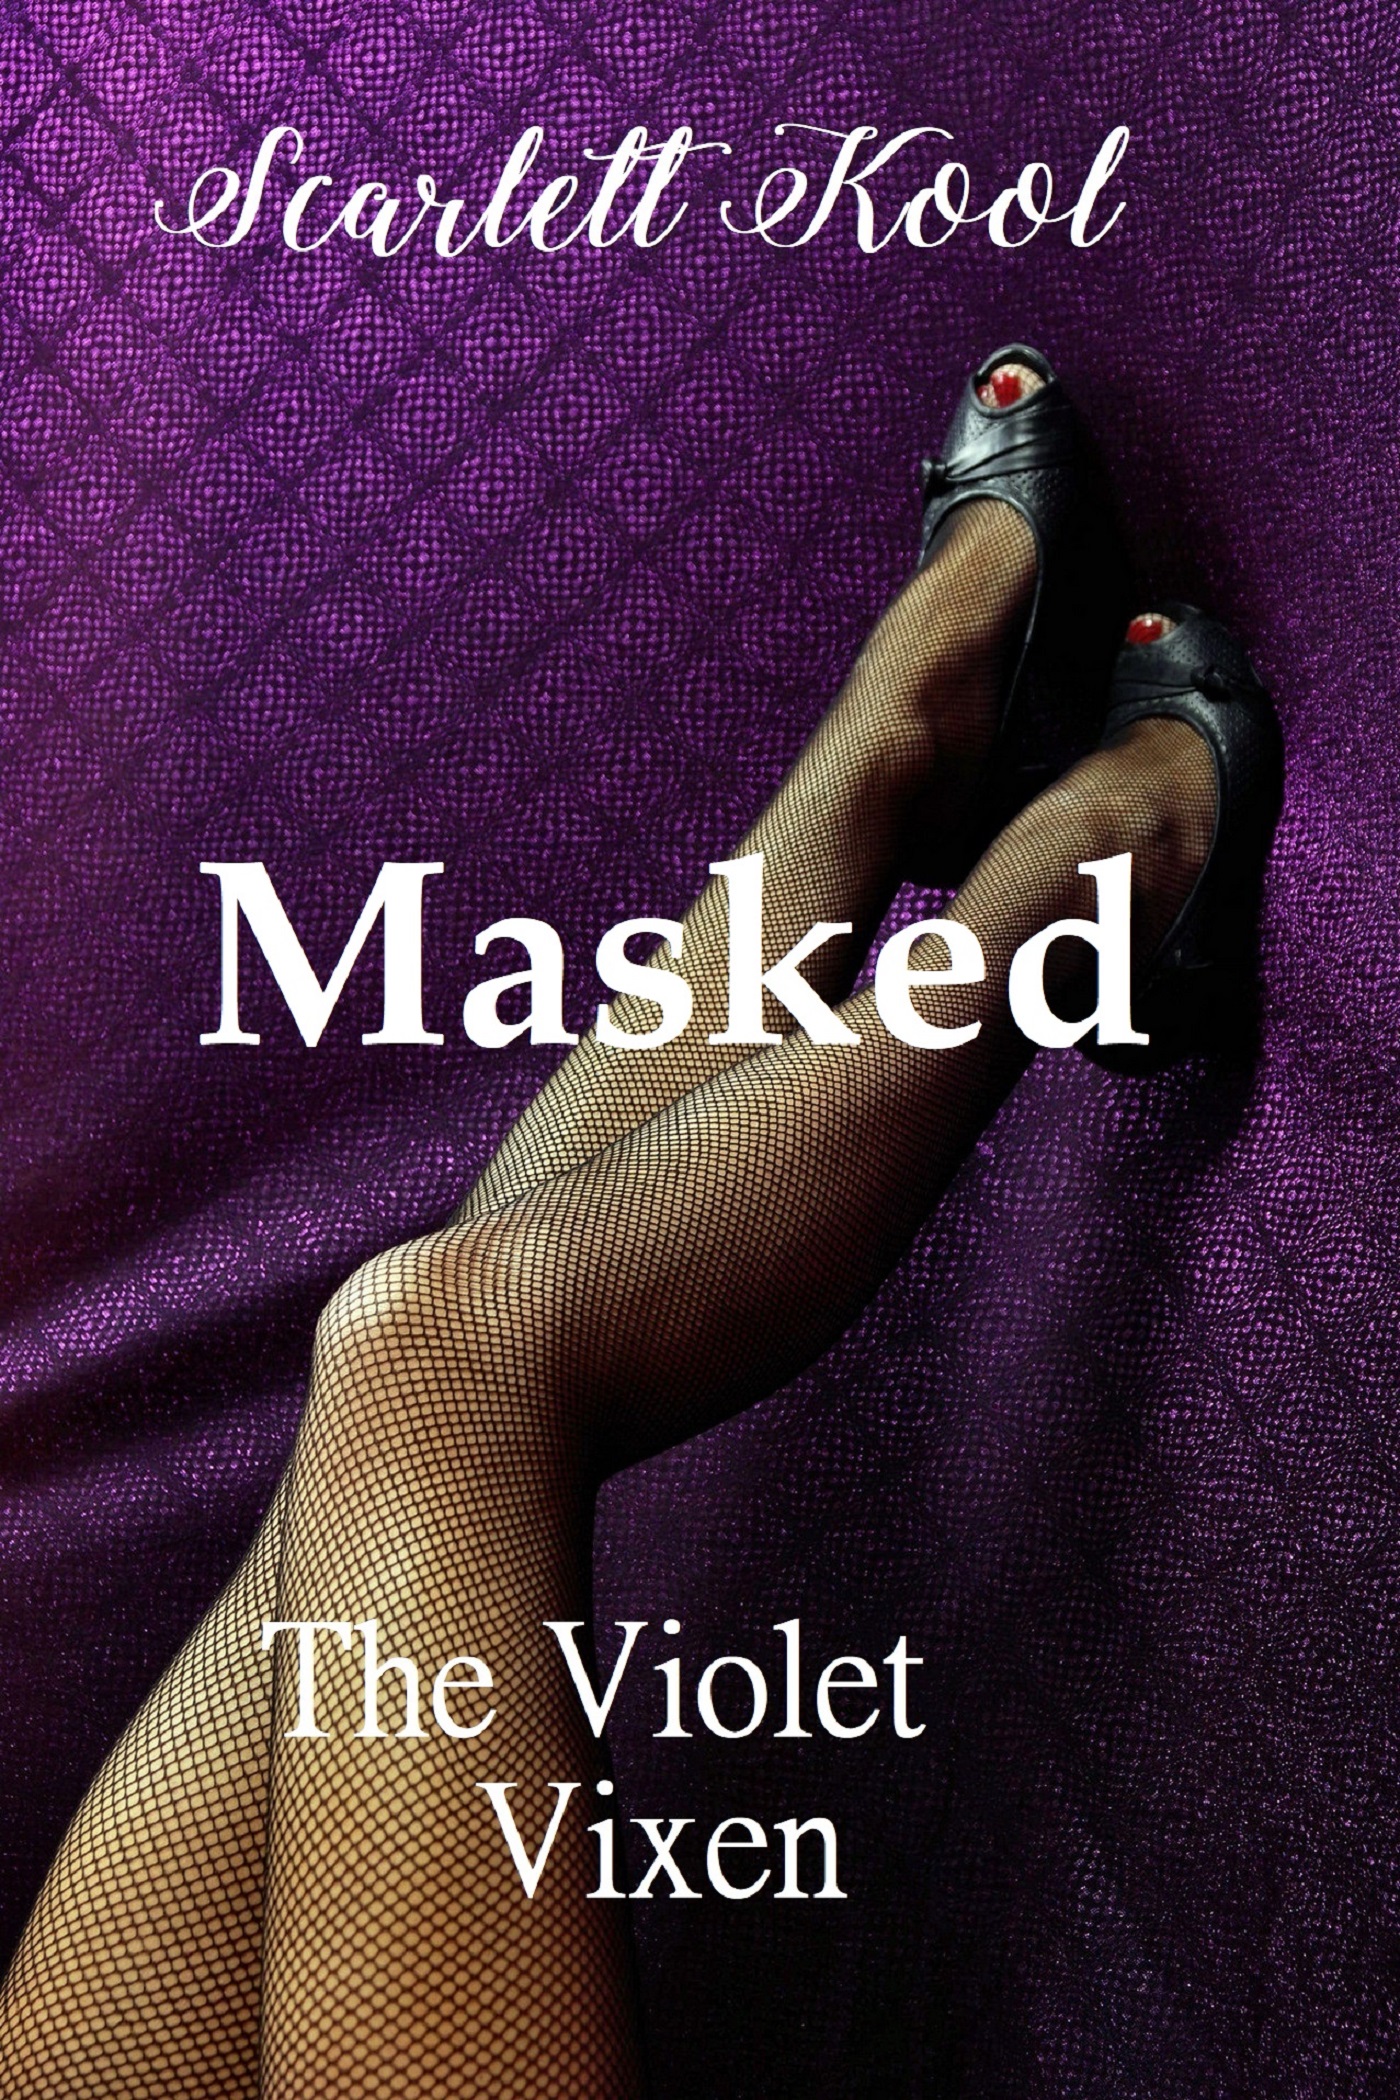 FREE: Masked by Scarlett kool